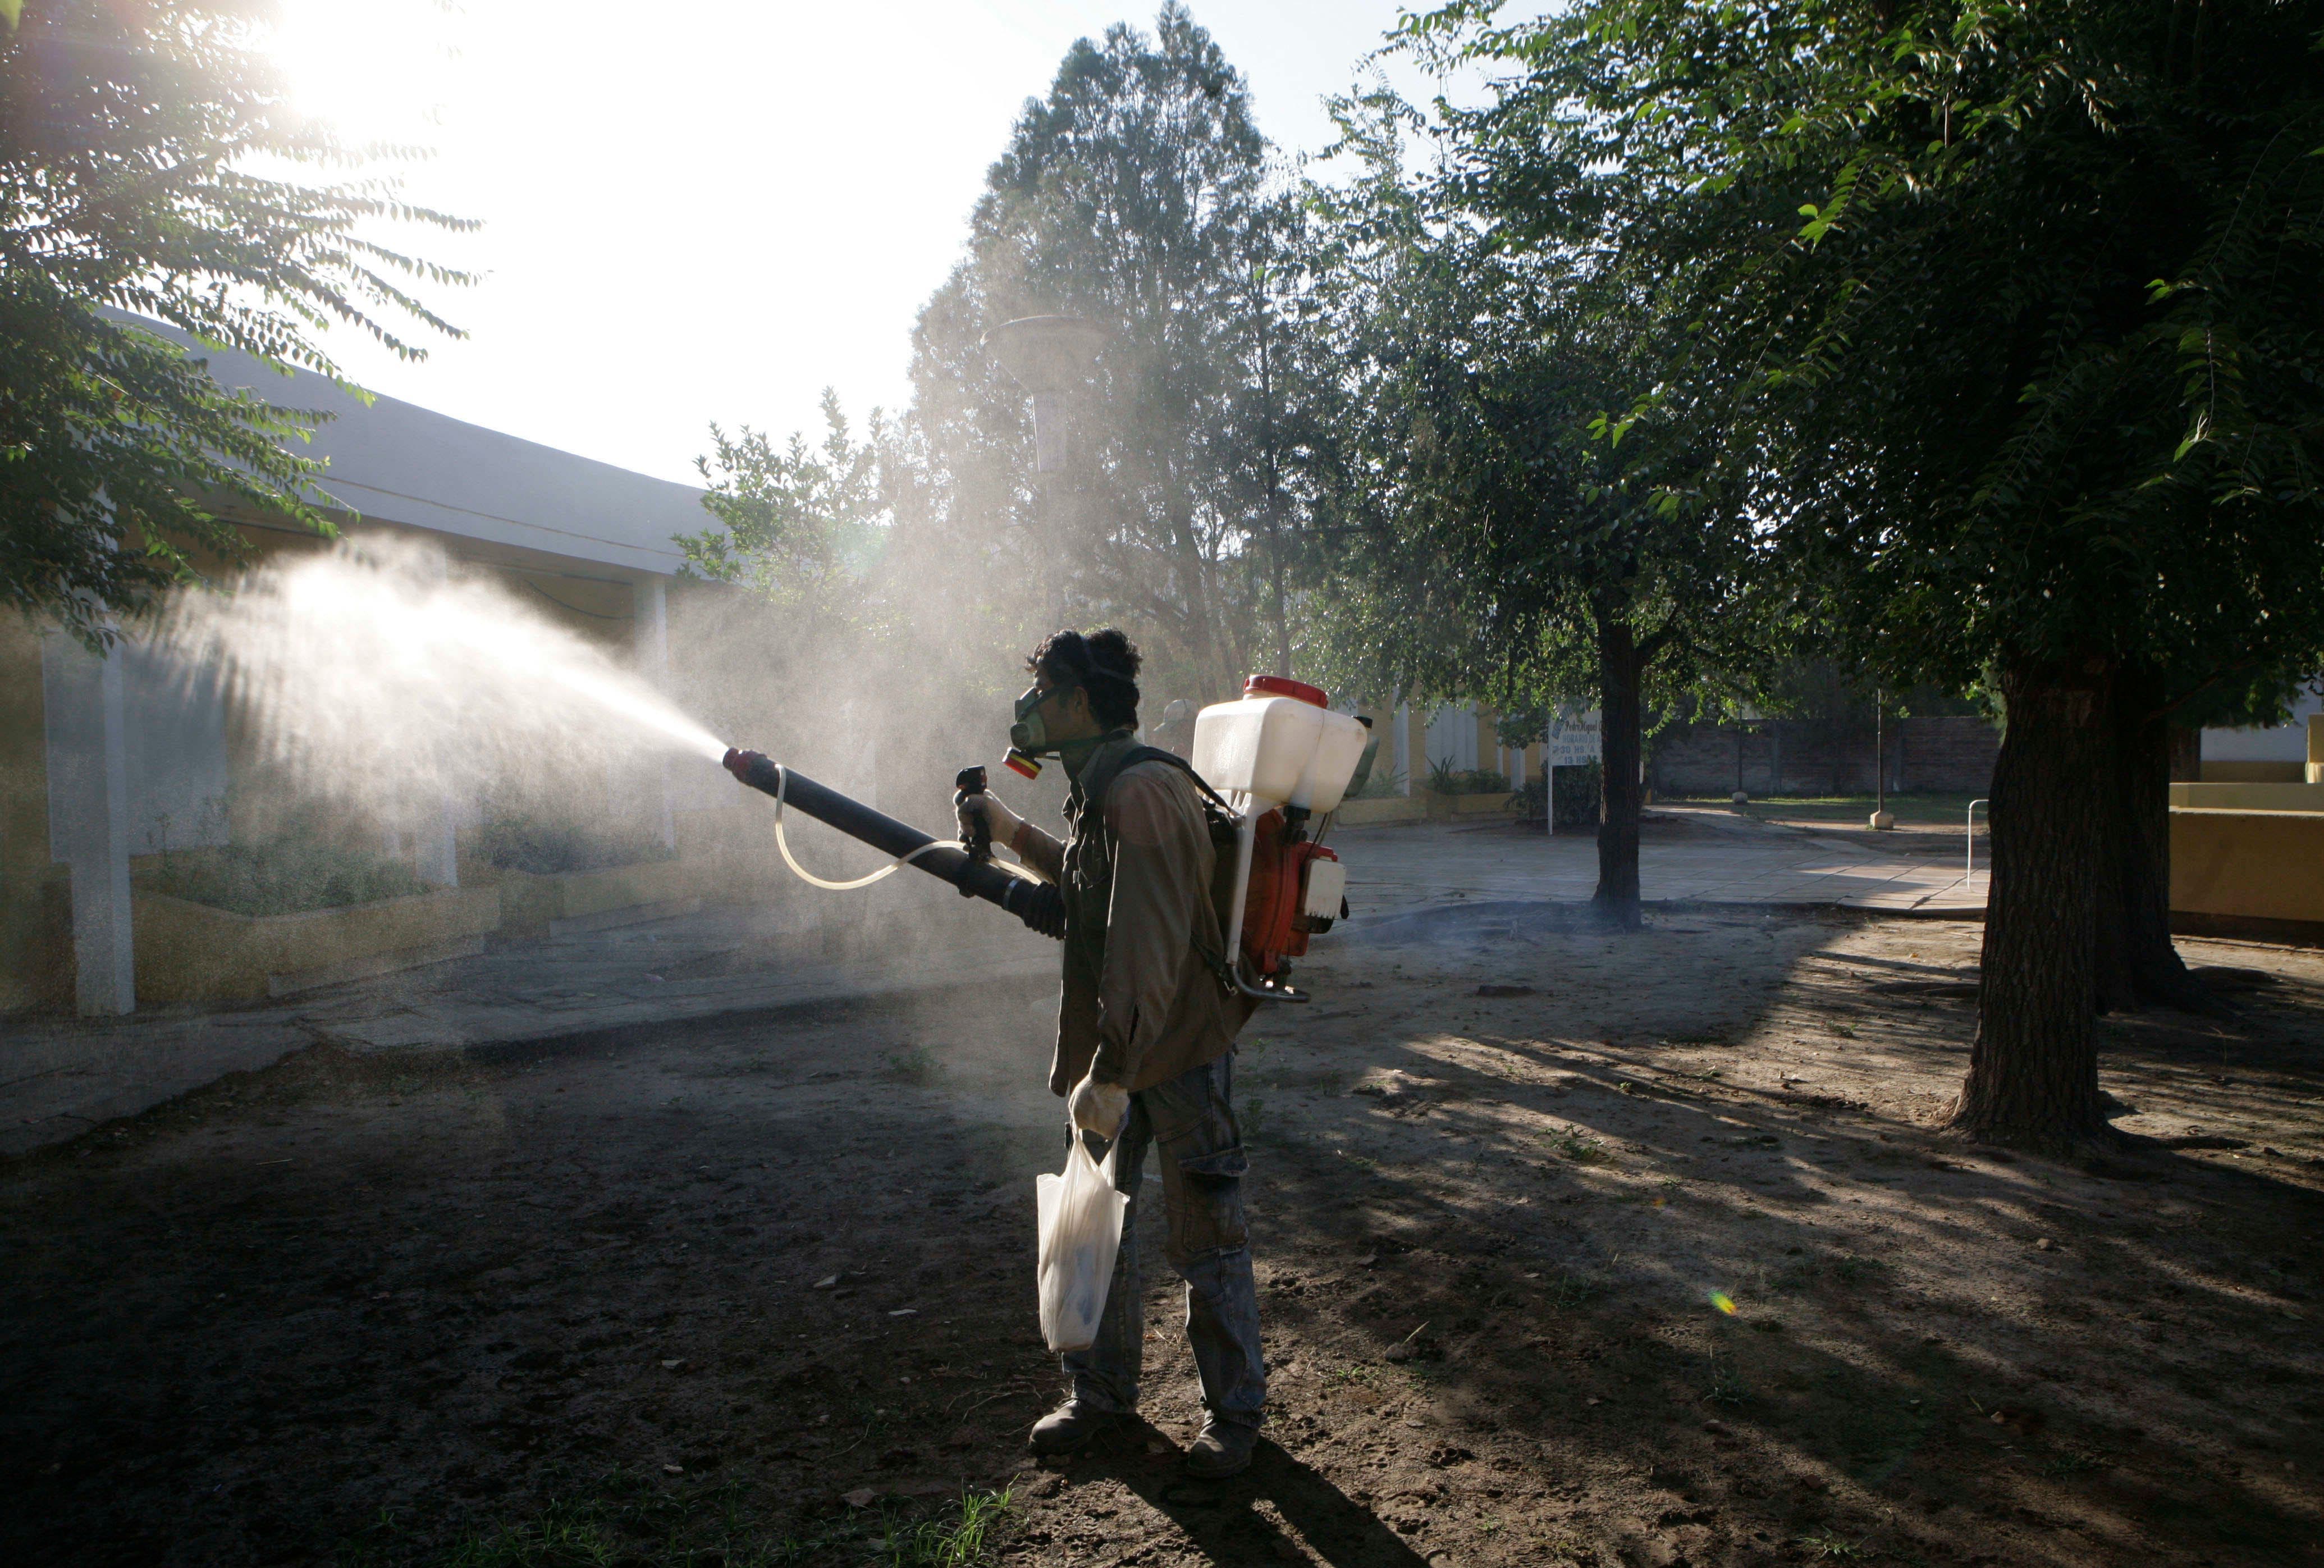 der klimawandel fördert die ausbreitung der dengue-krankheit. ein augenschein vor ort in argentinien